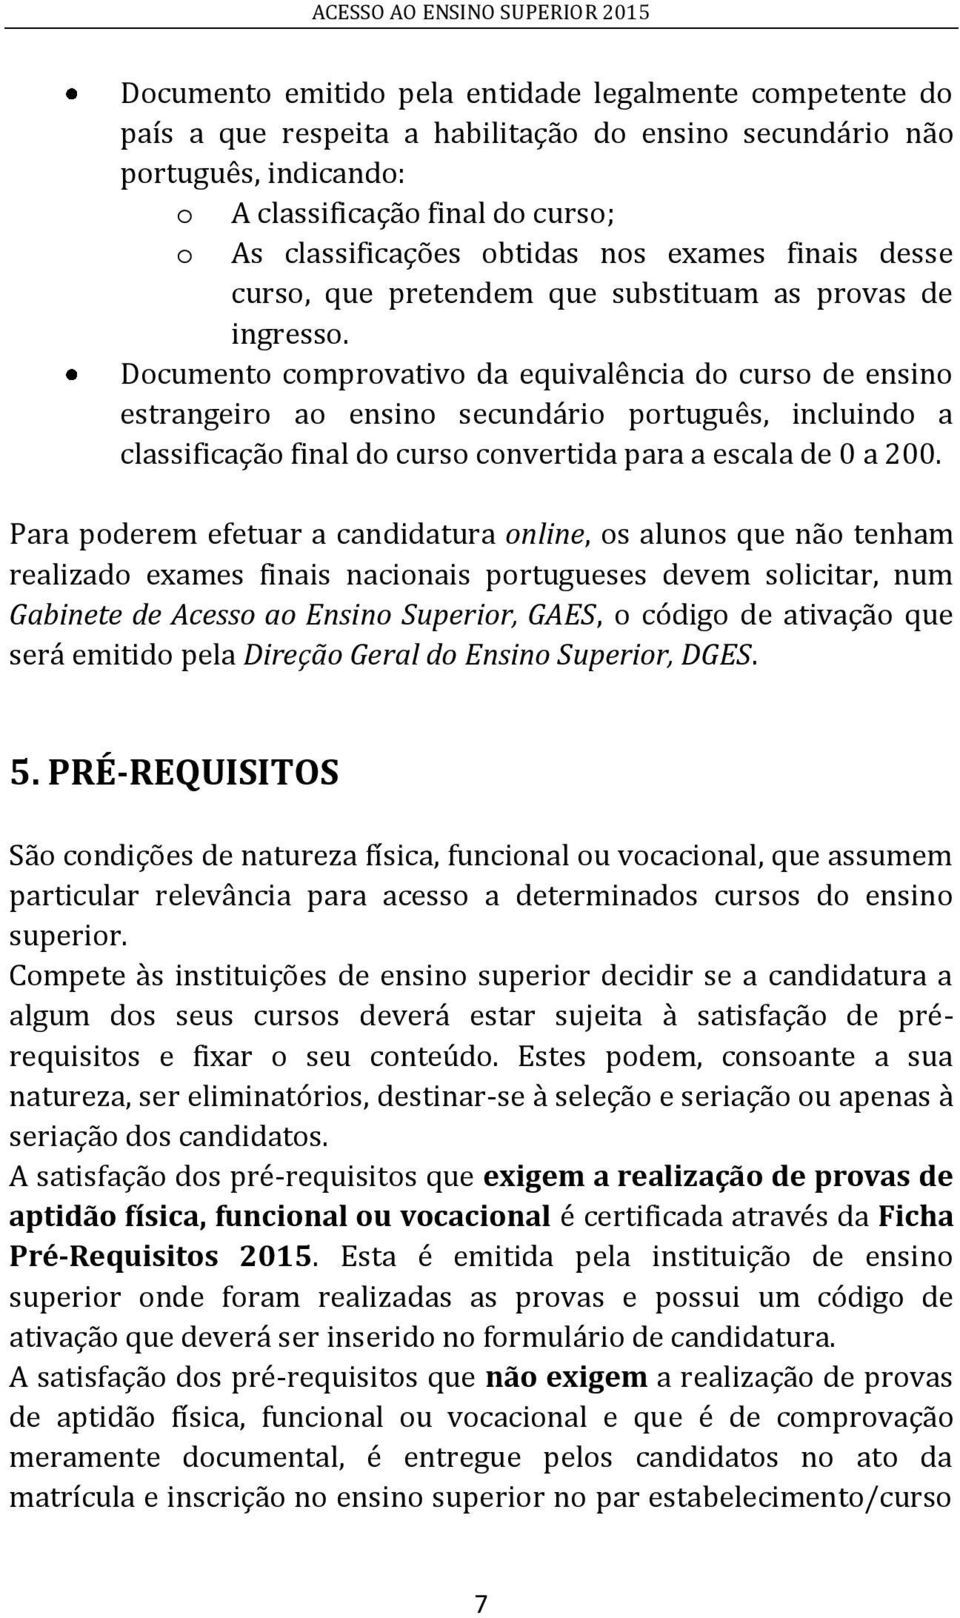 Documento comprovativo da equivalência do curso de ensino estrangeiro ao ensino secundário português, incluindo a classificação final do curso convertida para a escala de 0 a 200.